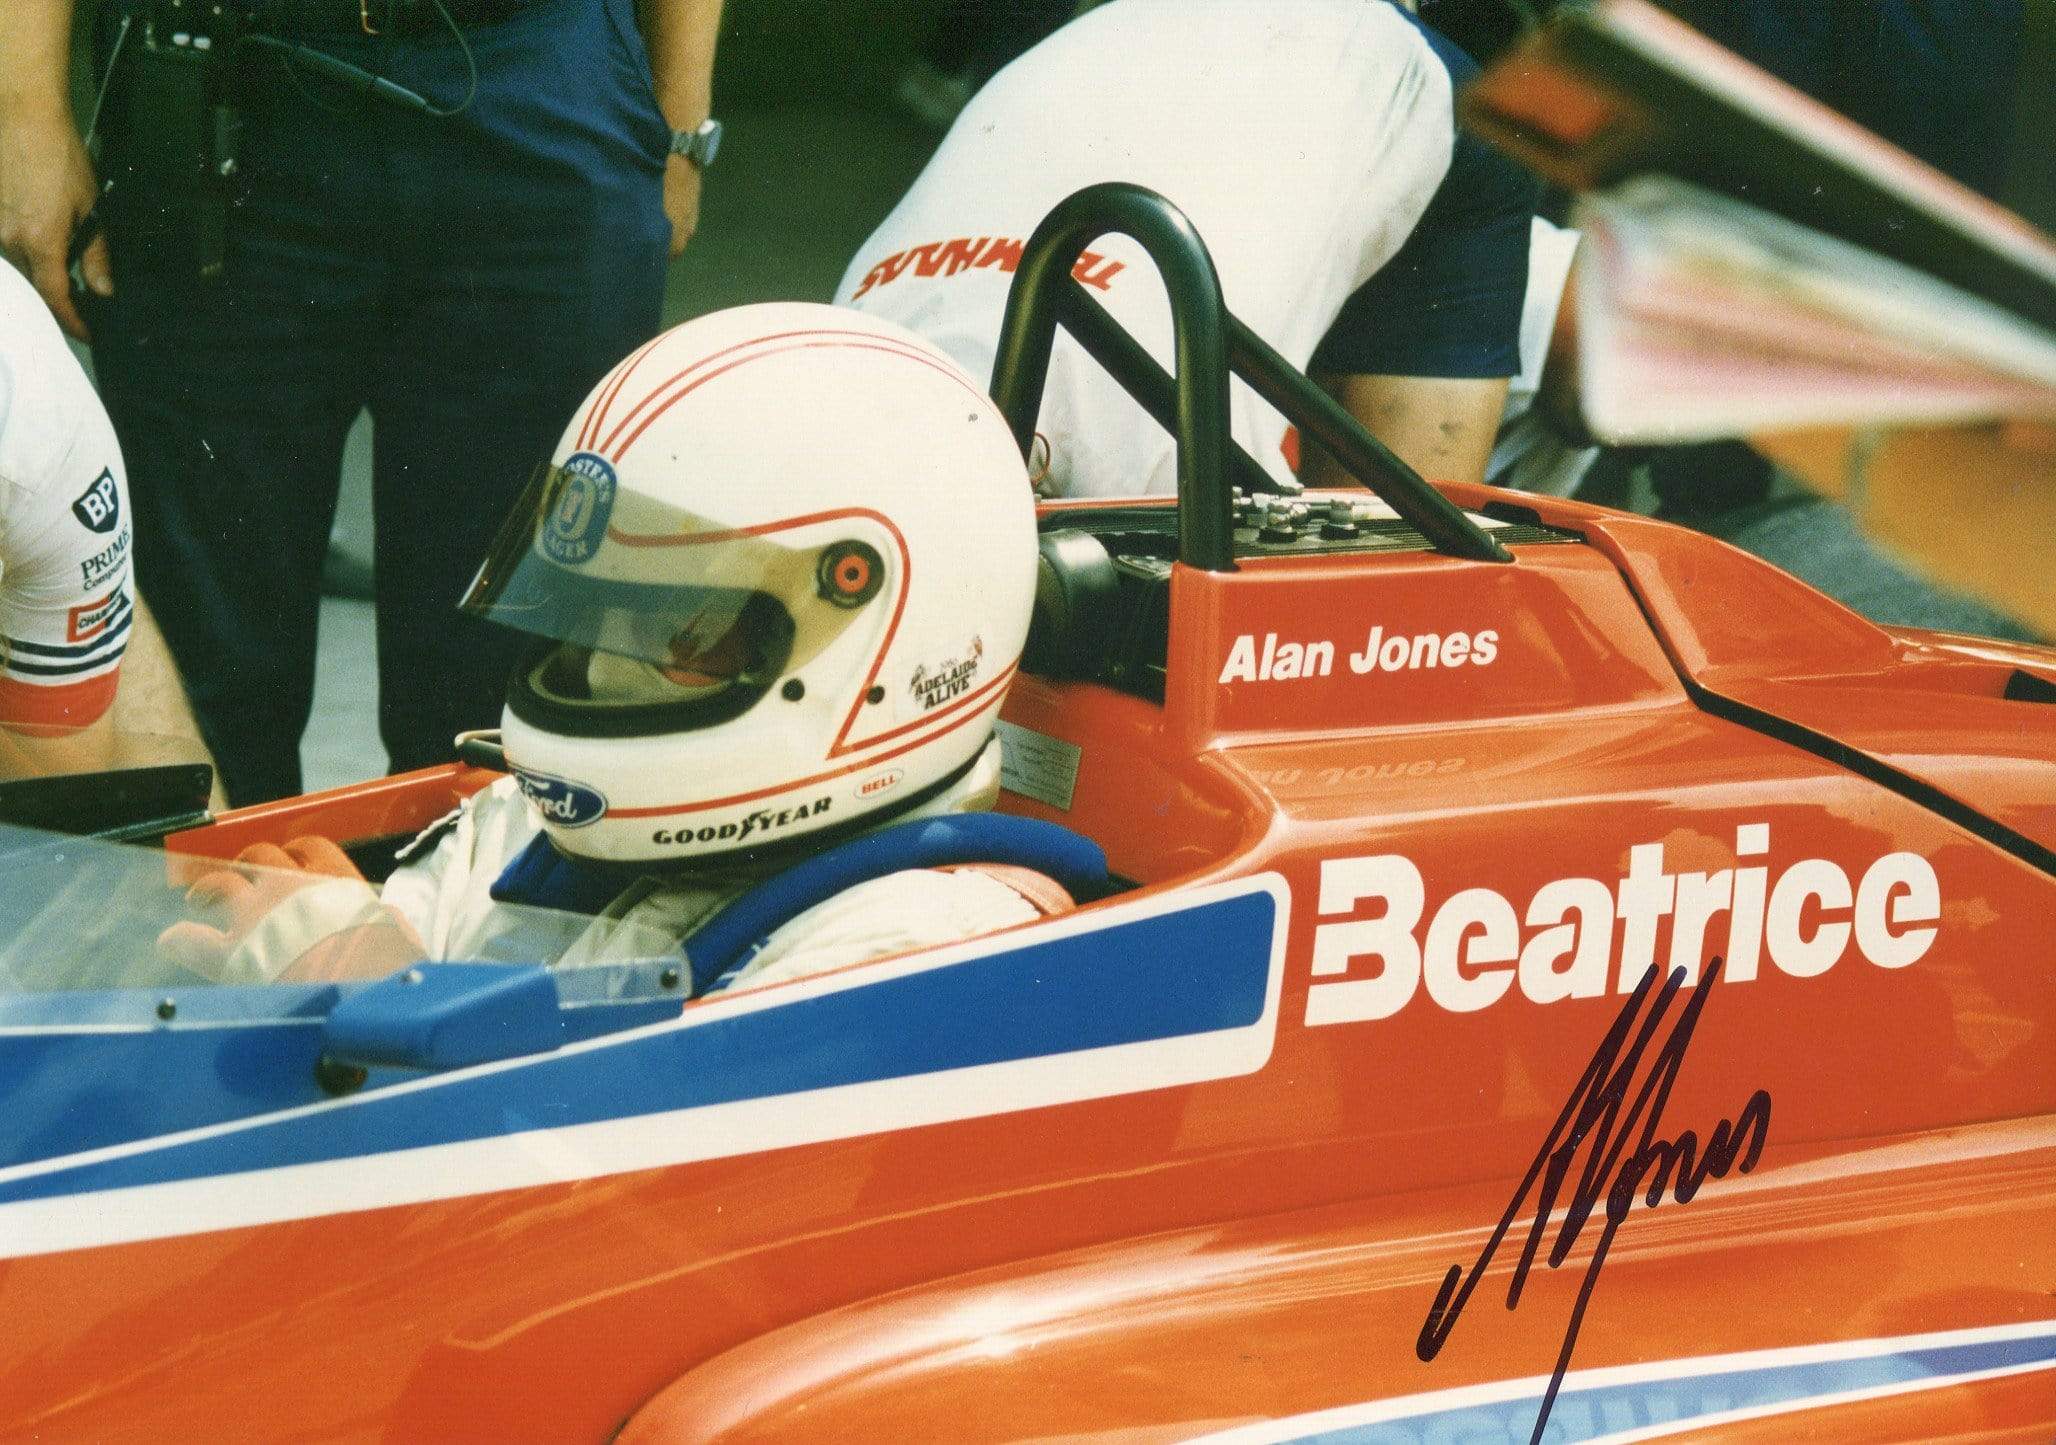 Alan Jones Autograph Autogramm | ID 6817874116757